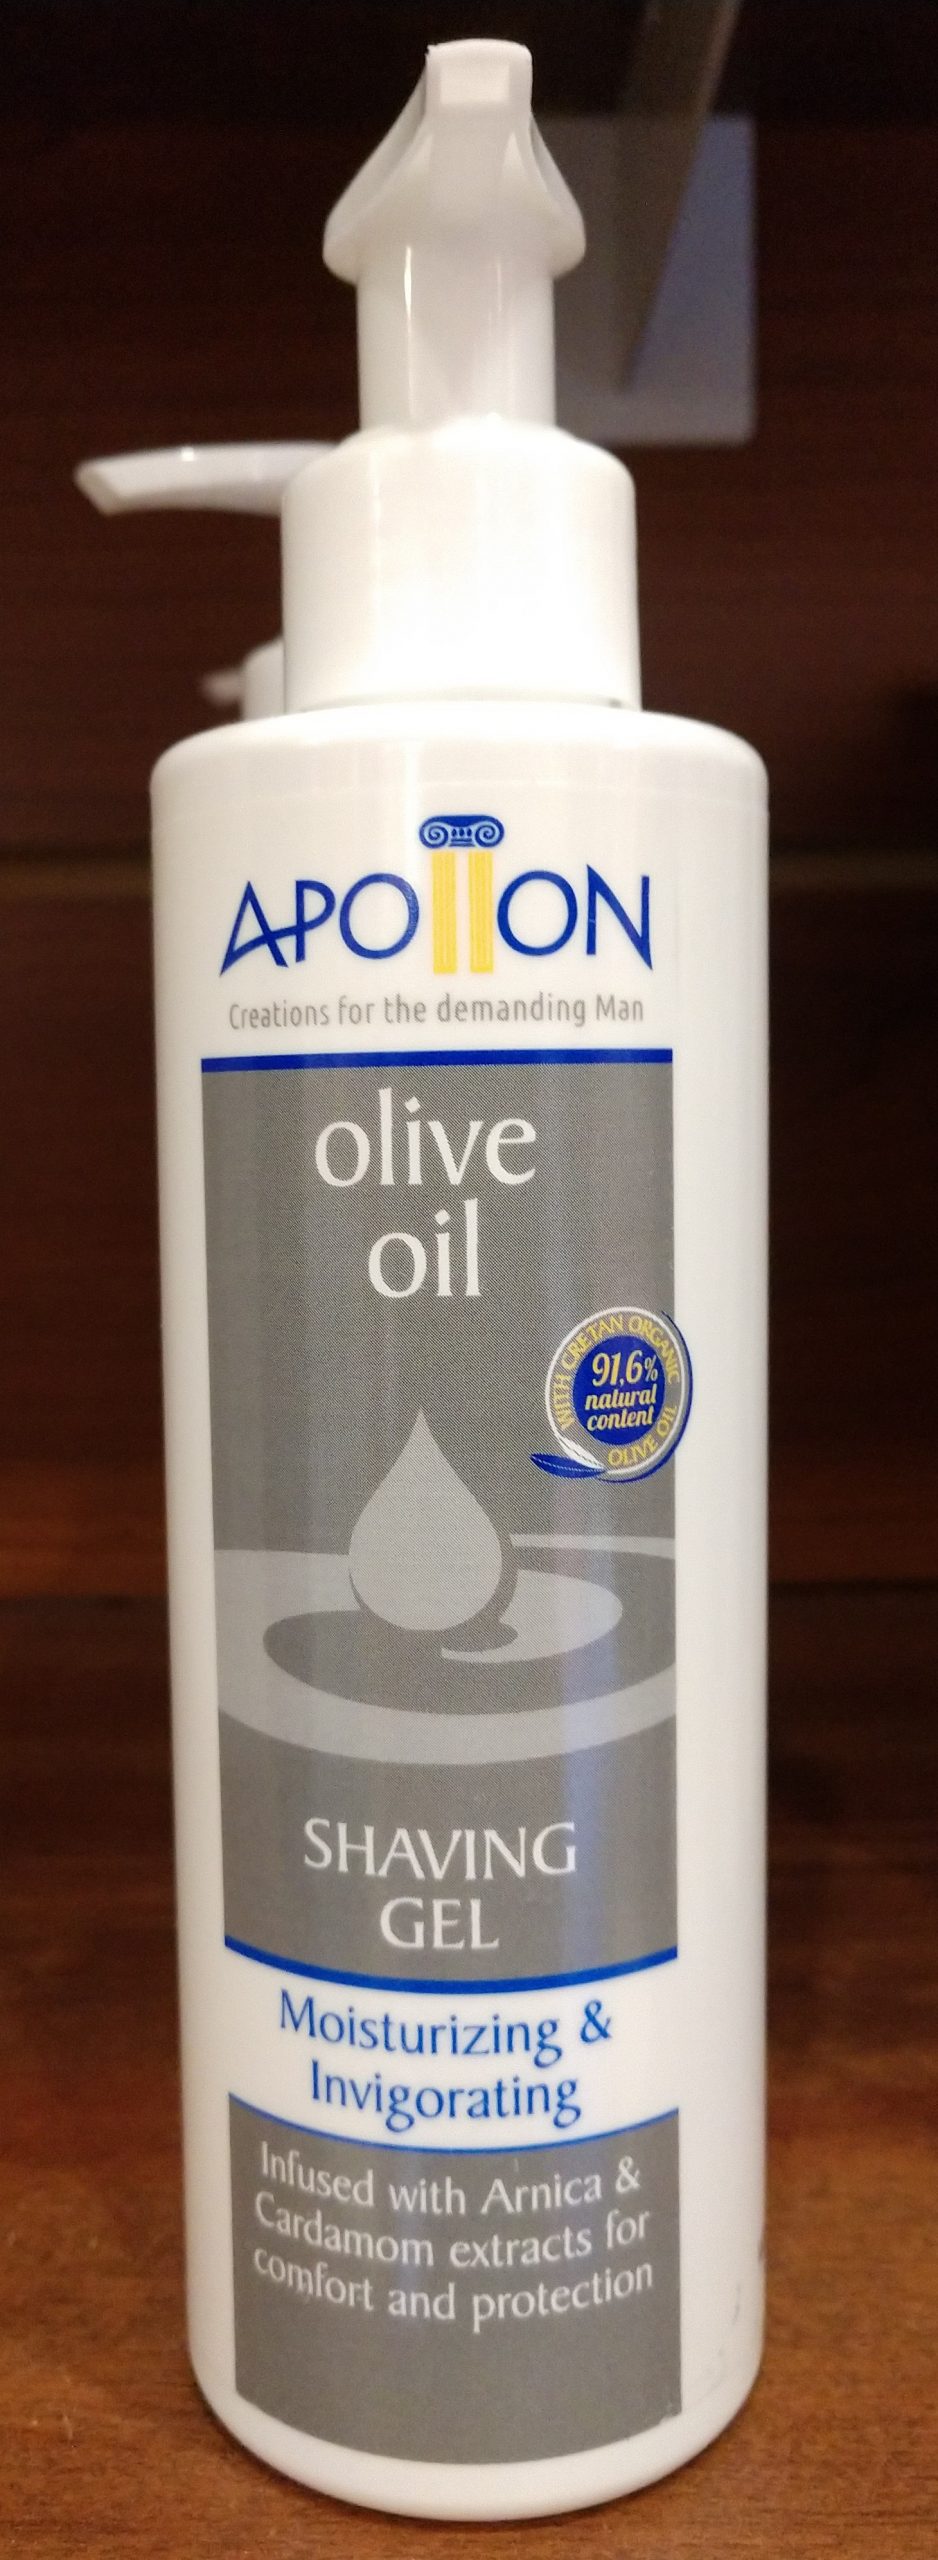 olive oil shaving gell